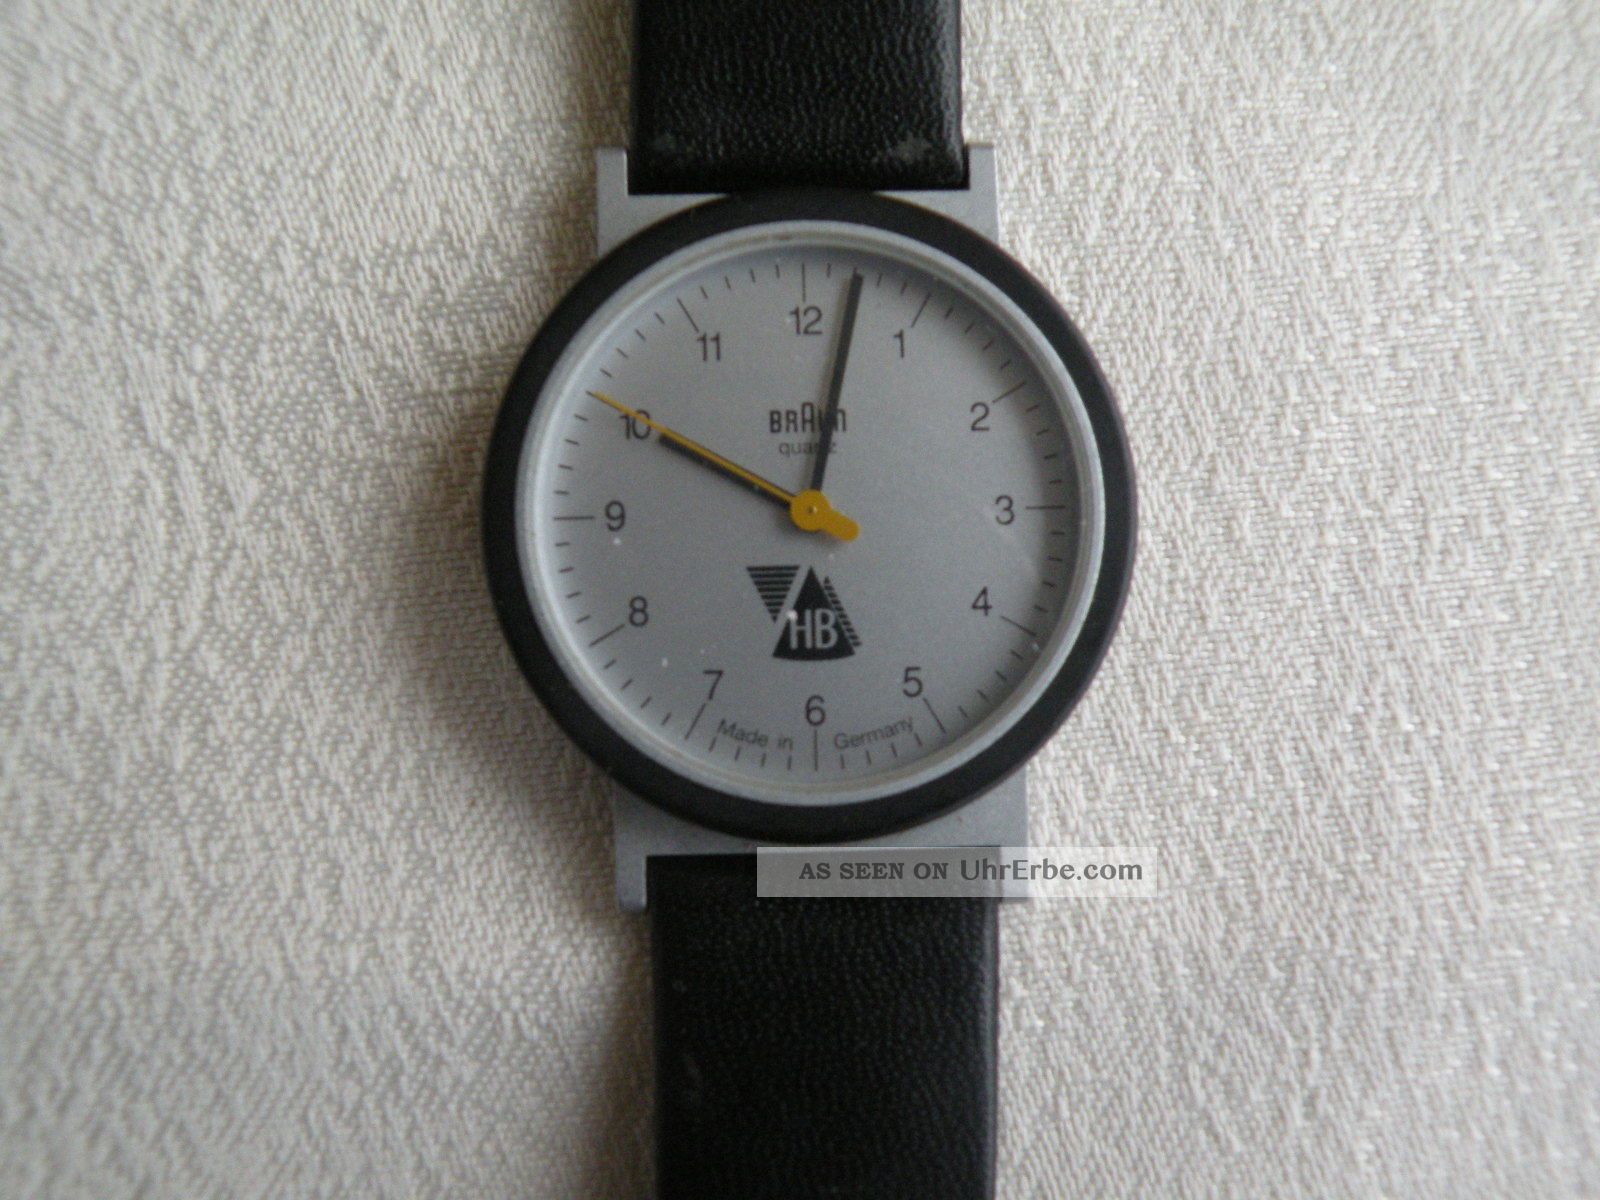 Braun Armbanduhr Aw10 Type 4789 Design: Dietrich Lubs 1989 (ungetragen) Armbanduhren Bild